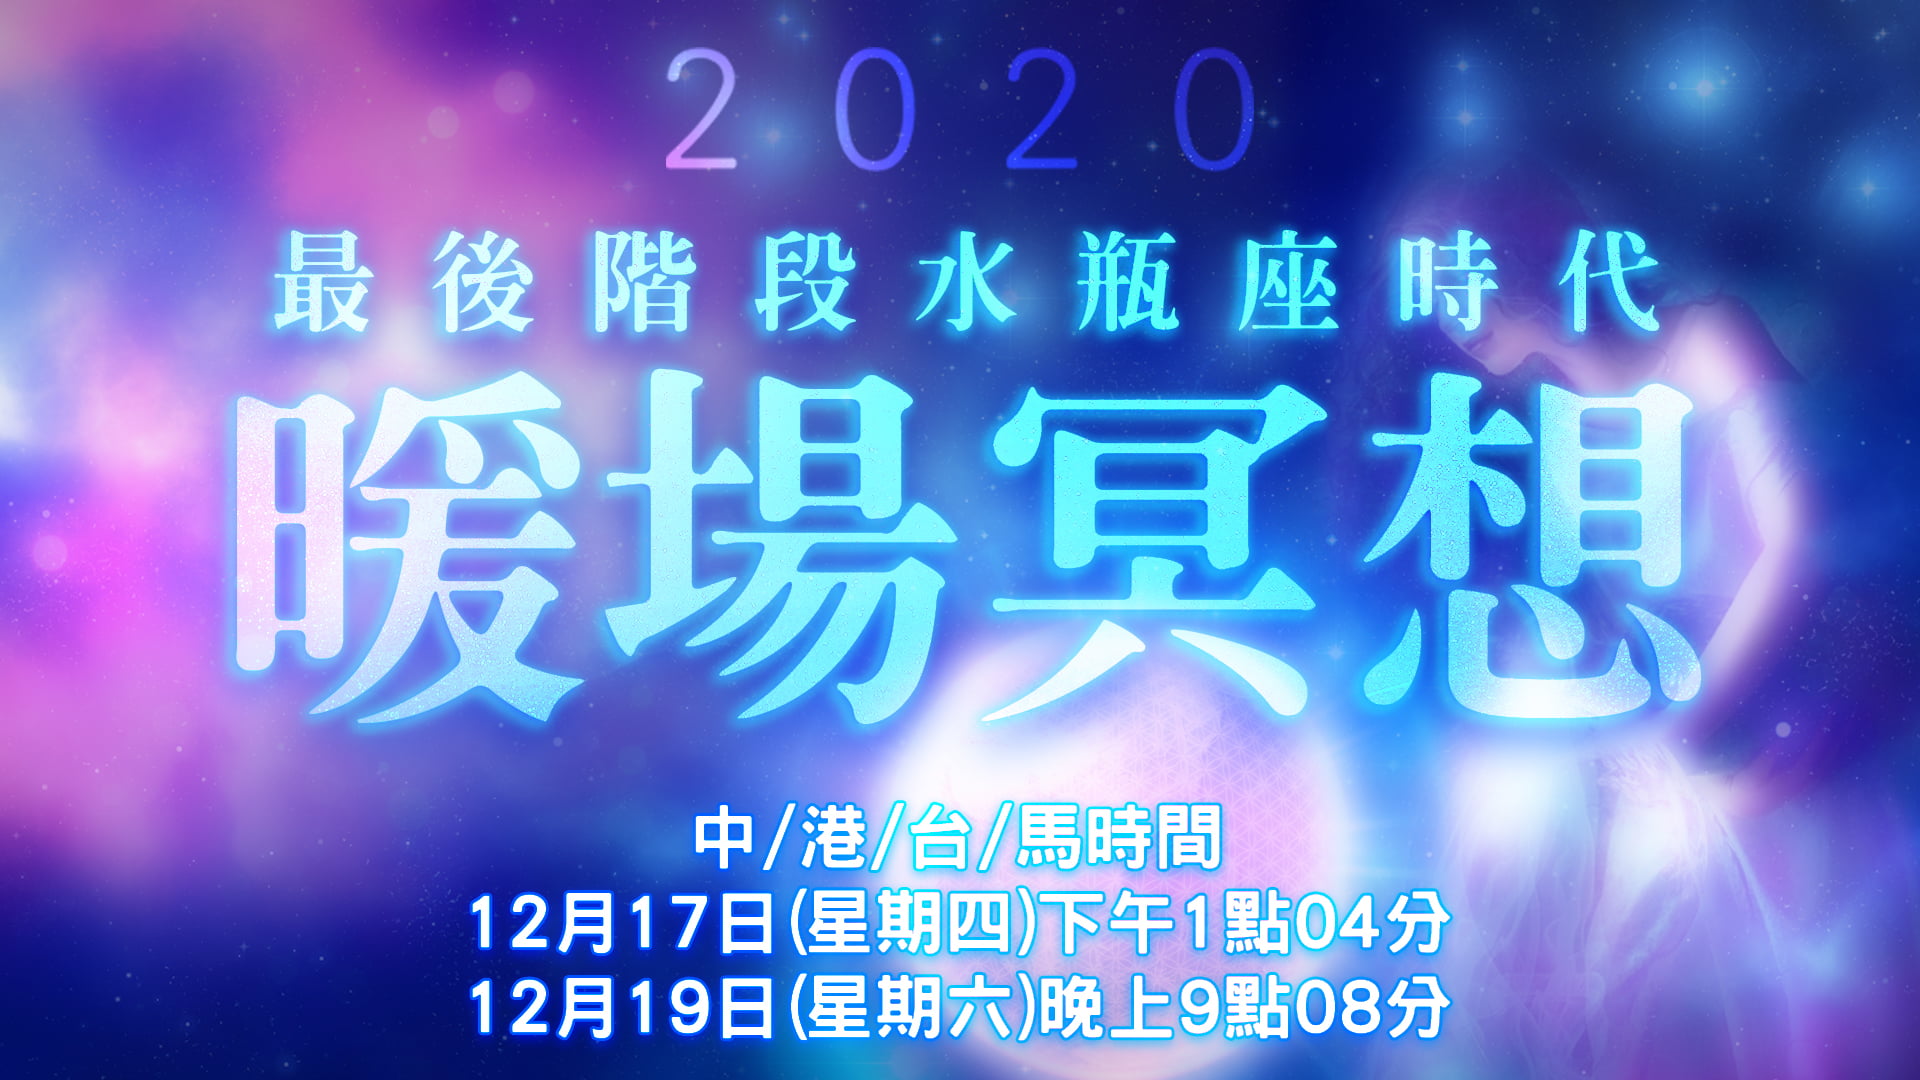 最後階段水瓶座時代暖場冥想2020年12月17日(四)下午13:04、12月19日(六)晚上21:08 全球同步進行